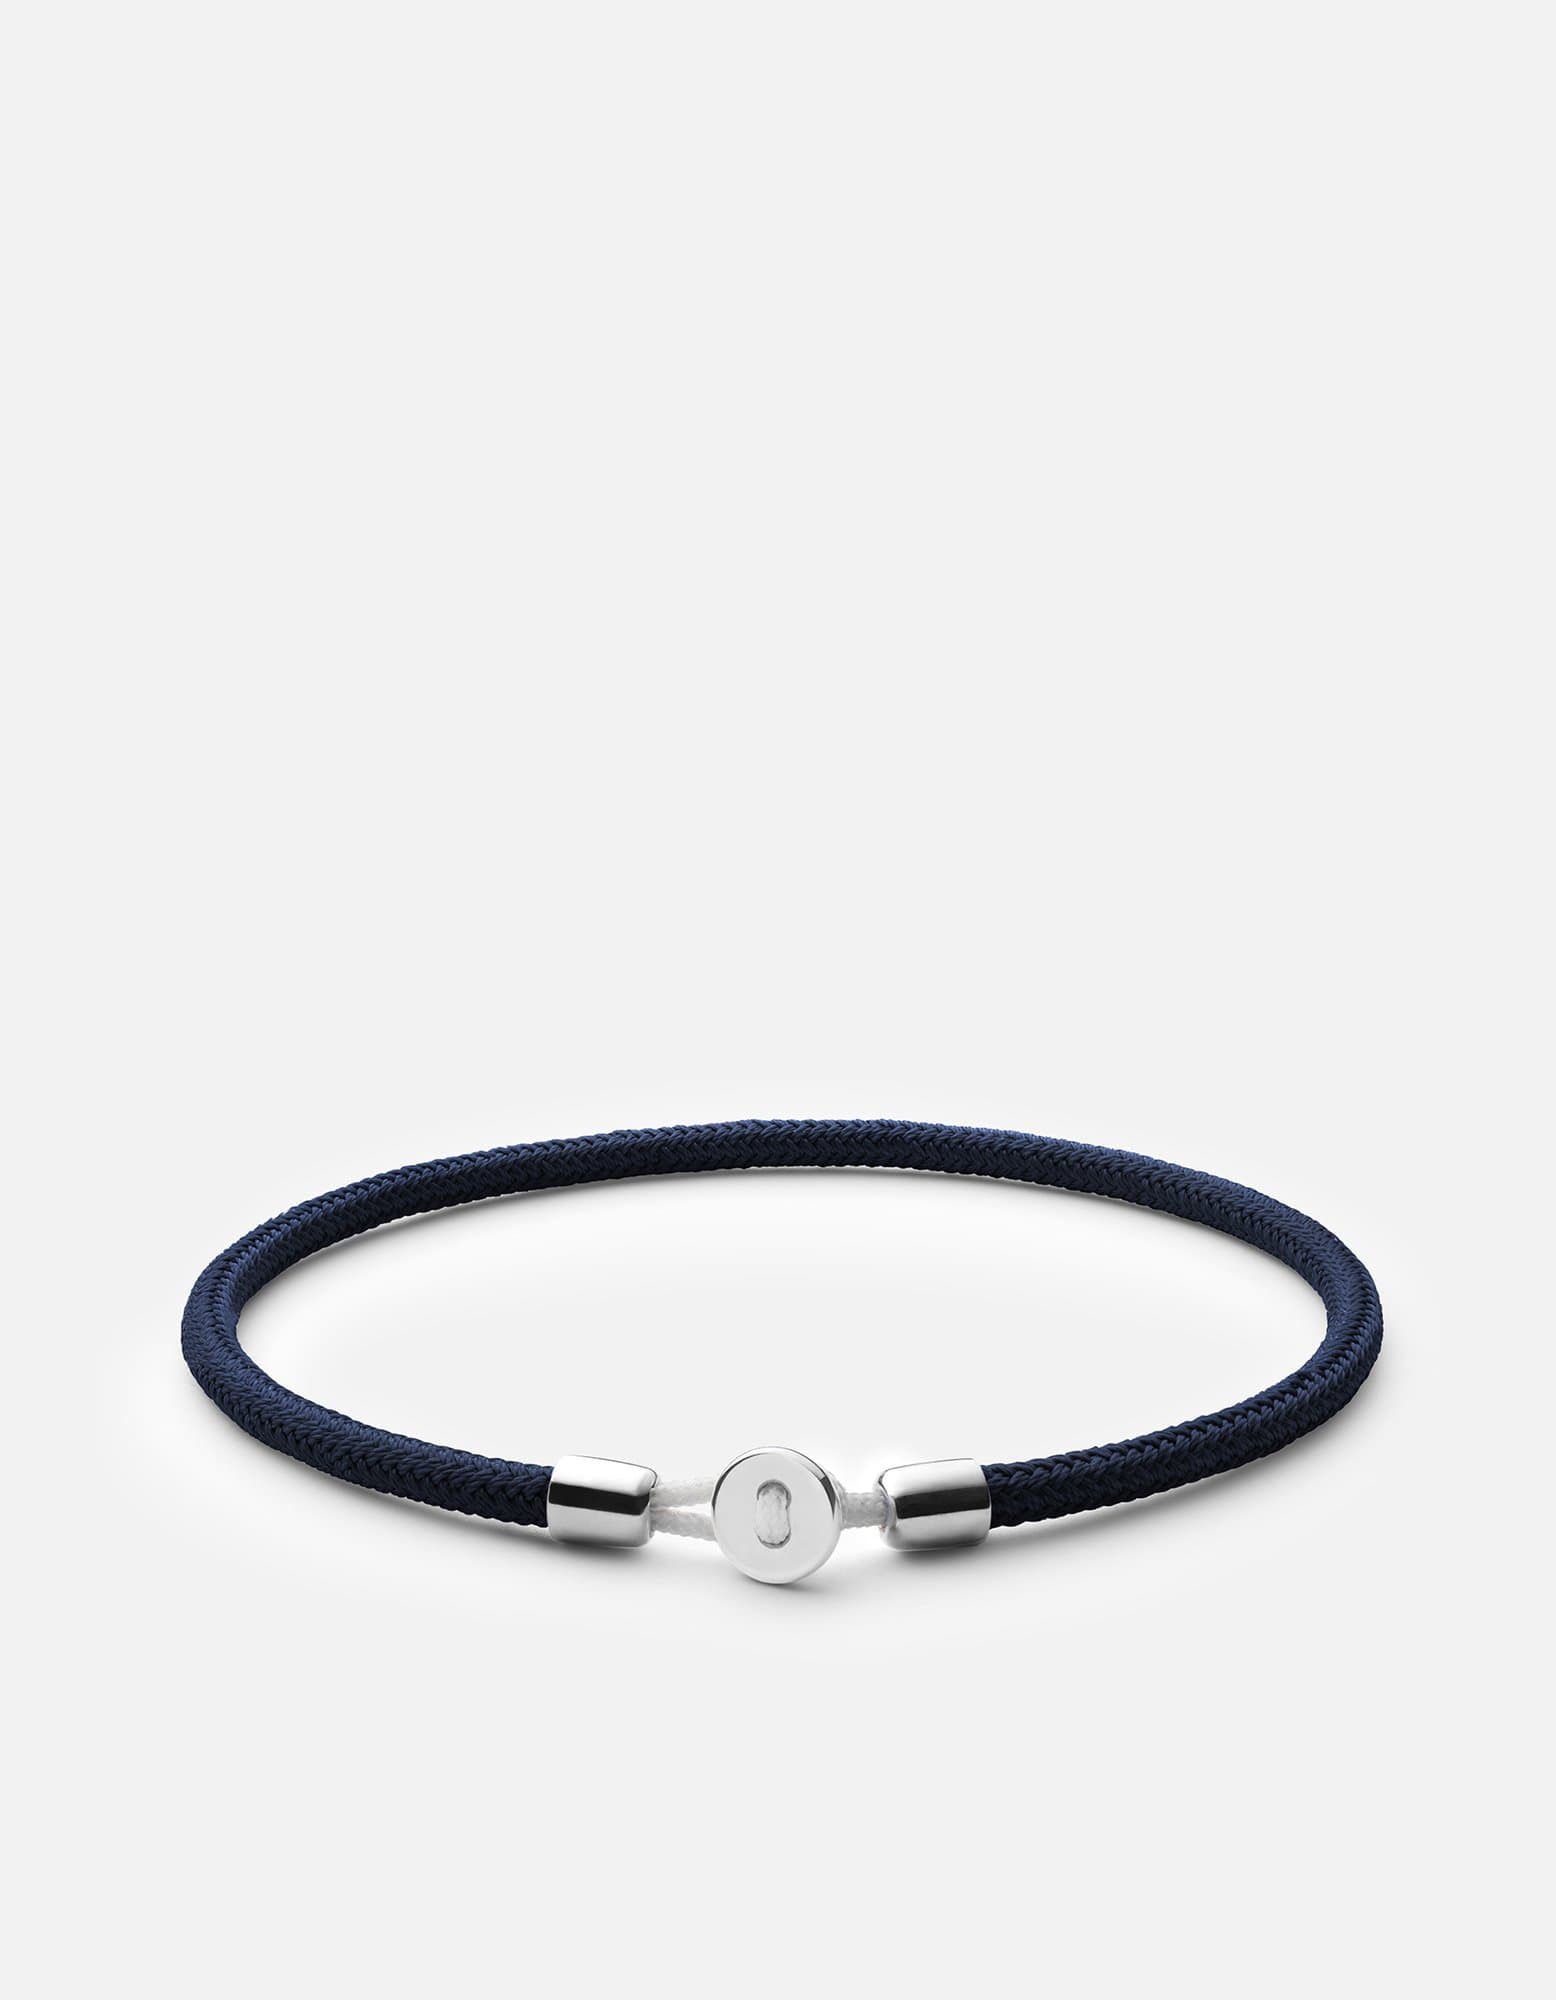 Nexus Rope Bracelet, Sterling Silver | Men's Bracelets | Miansai